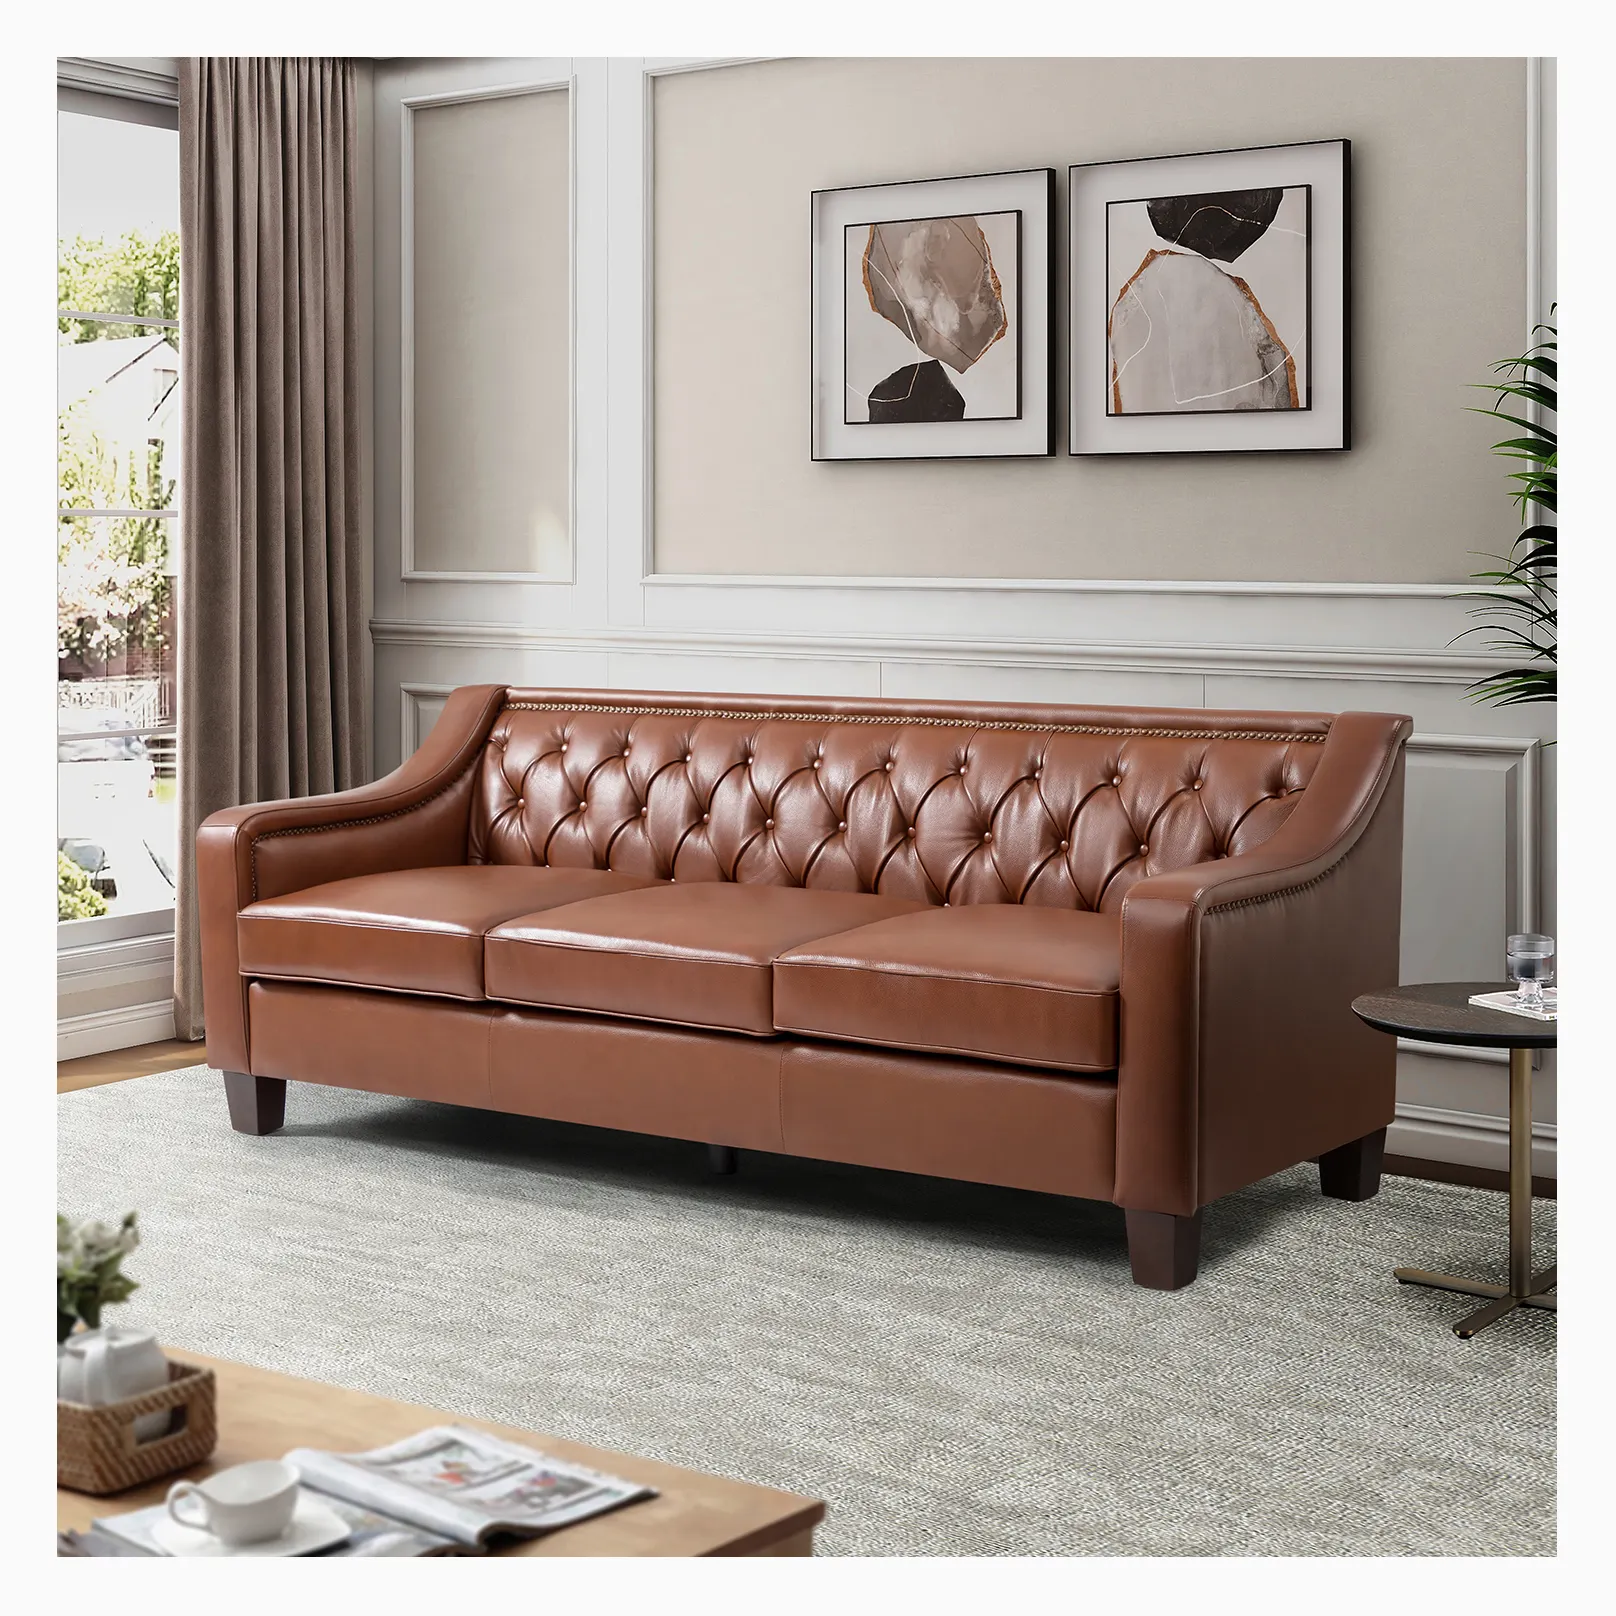 Современная мебель для гостиной в американском стиле, набор для дивана, 3 места, кожаный диван из стестерфилда